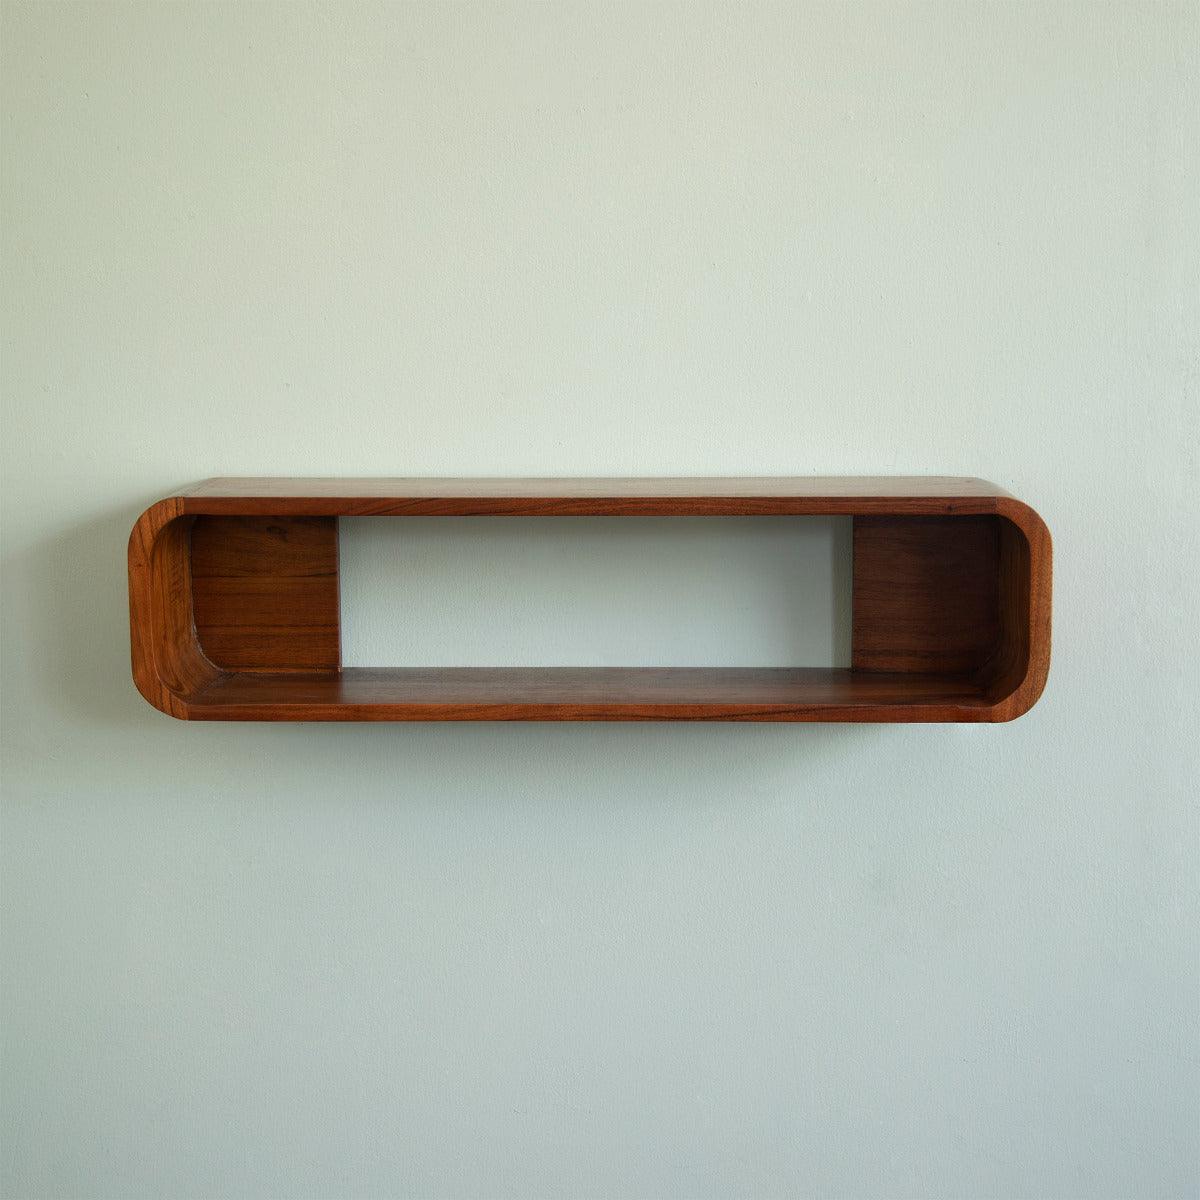 Boxy wooden wall shelf